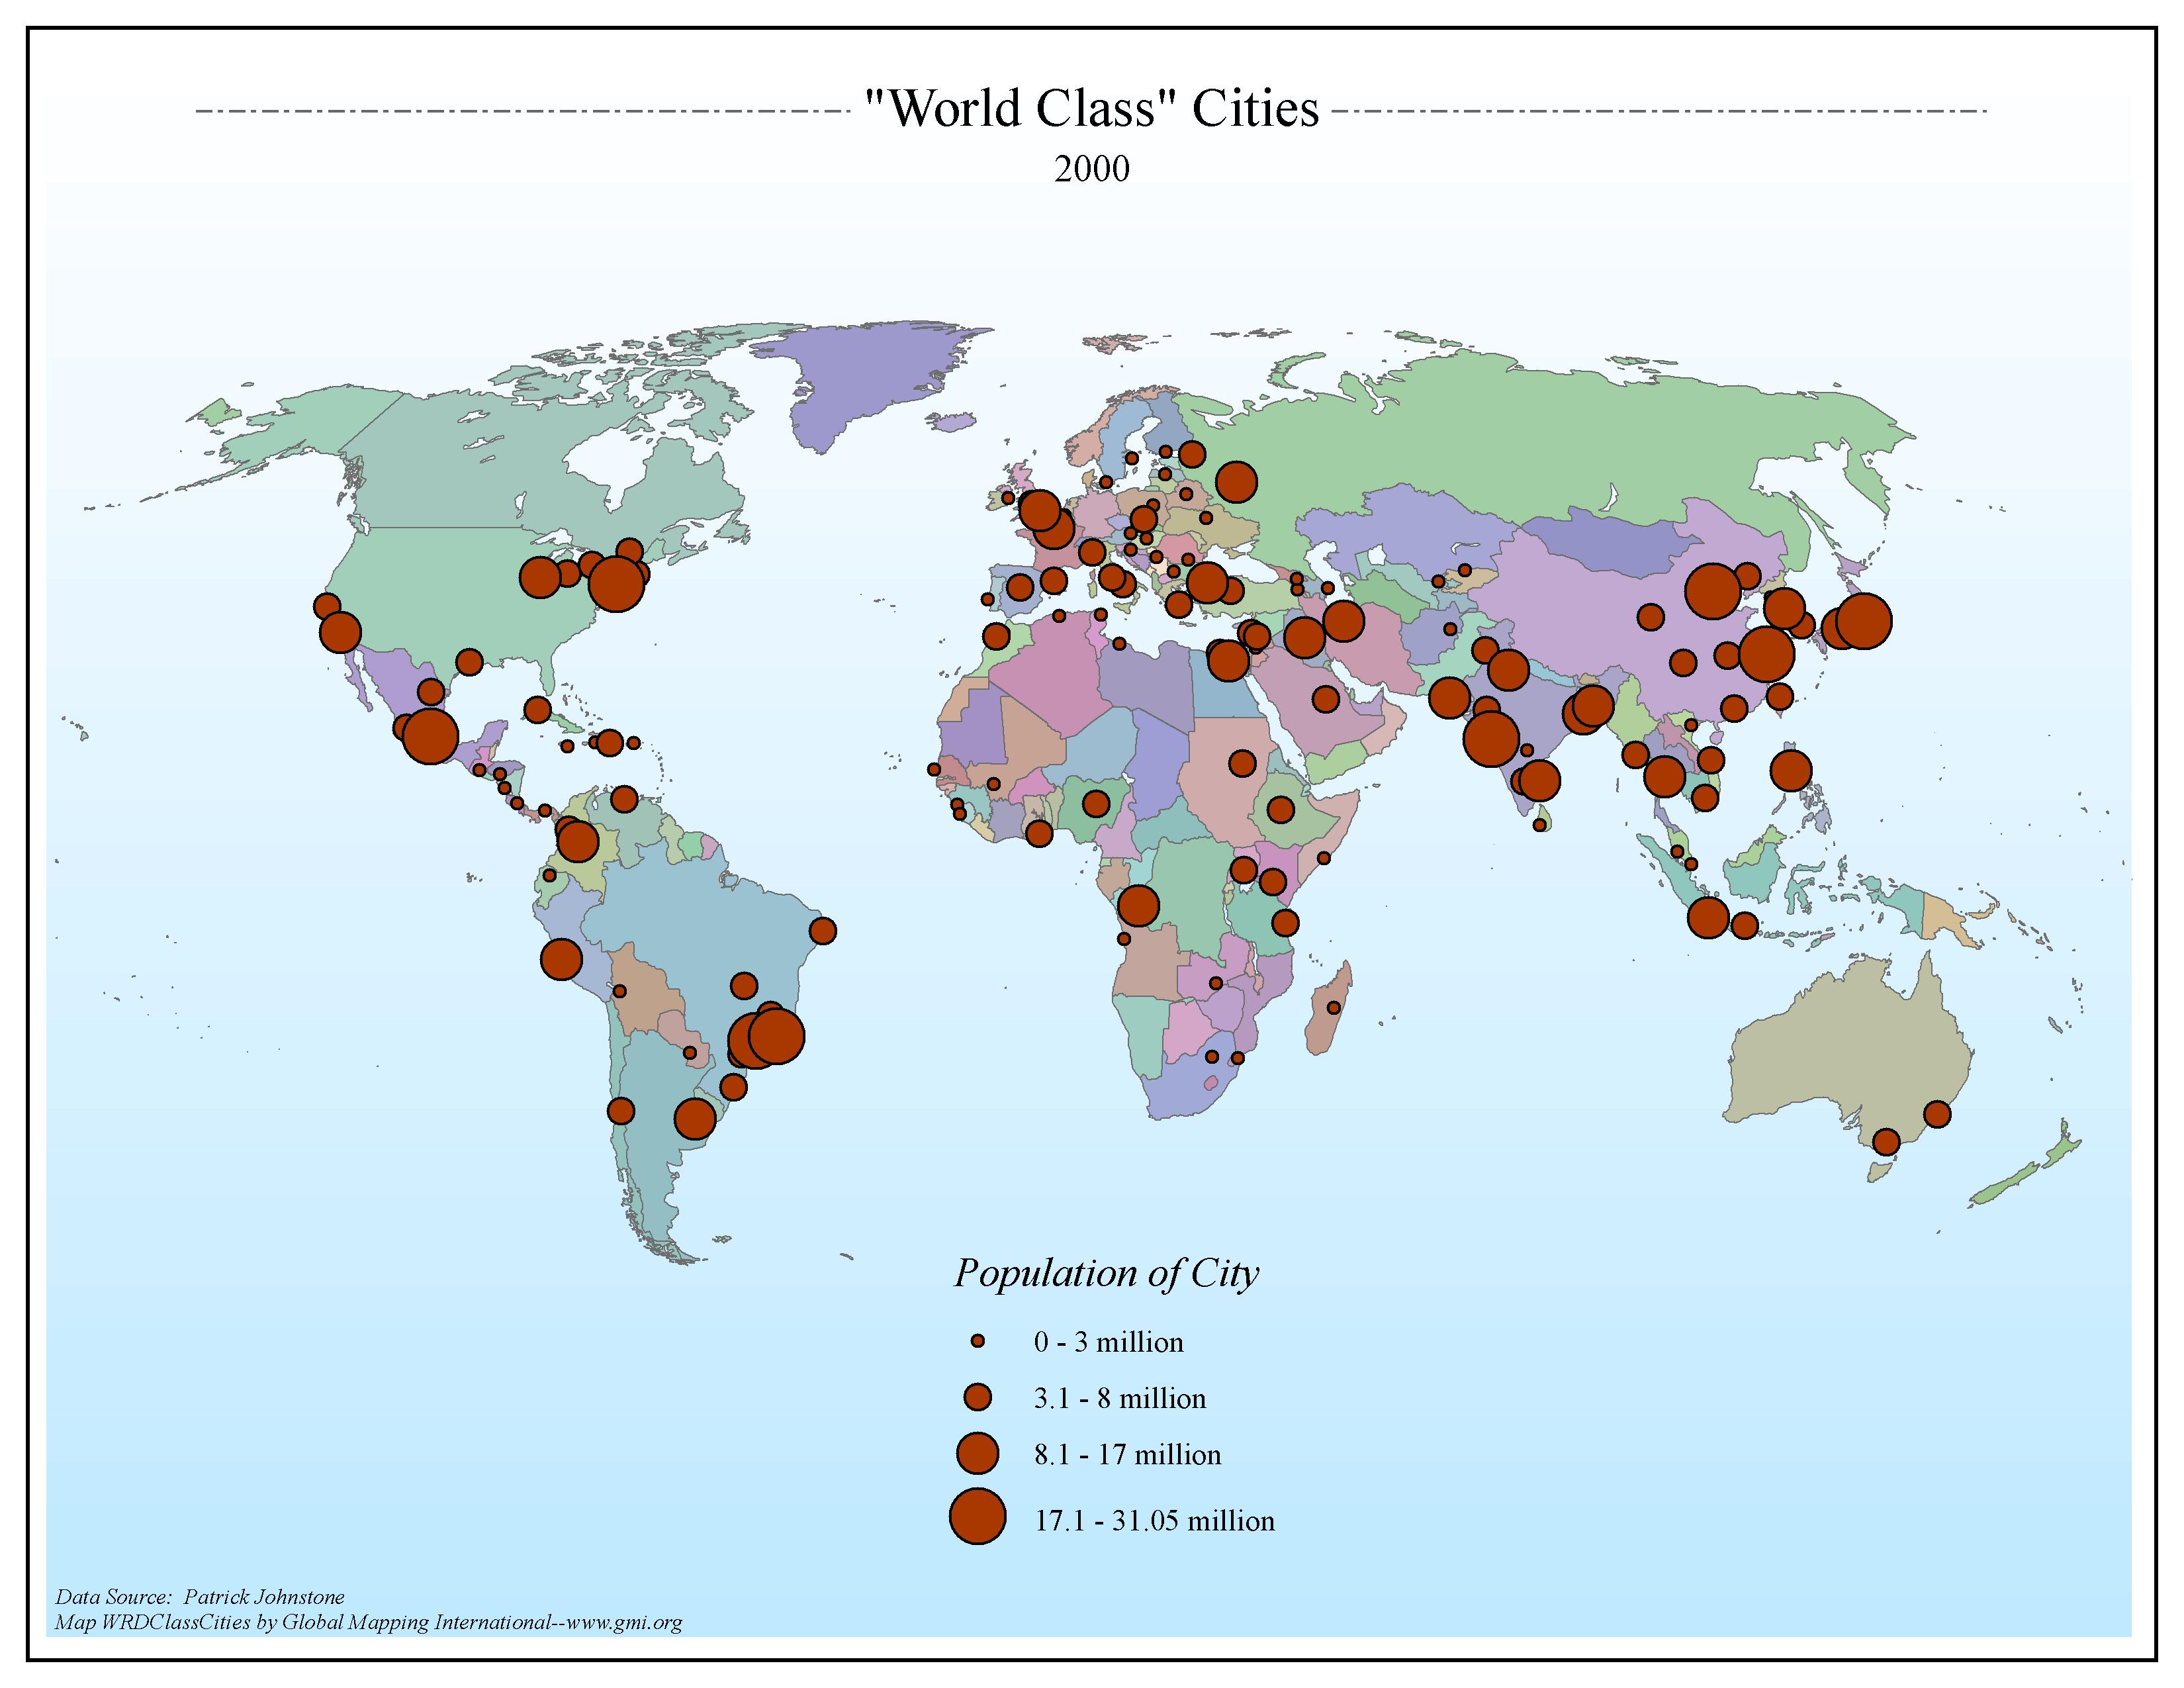 "World Class" Cities 2000